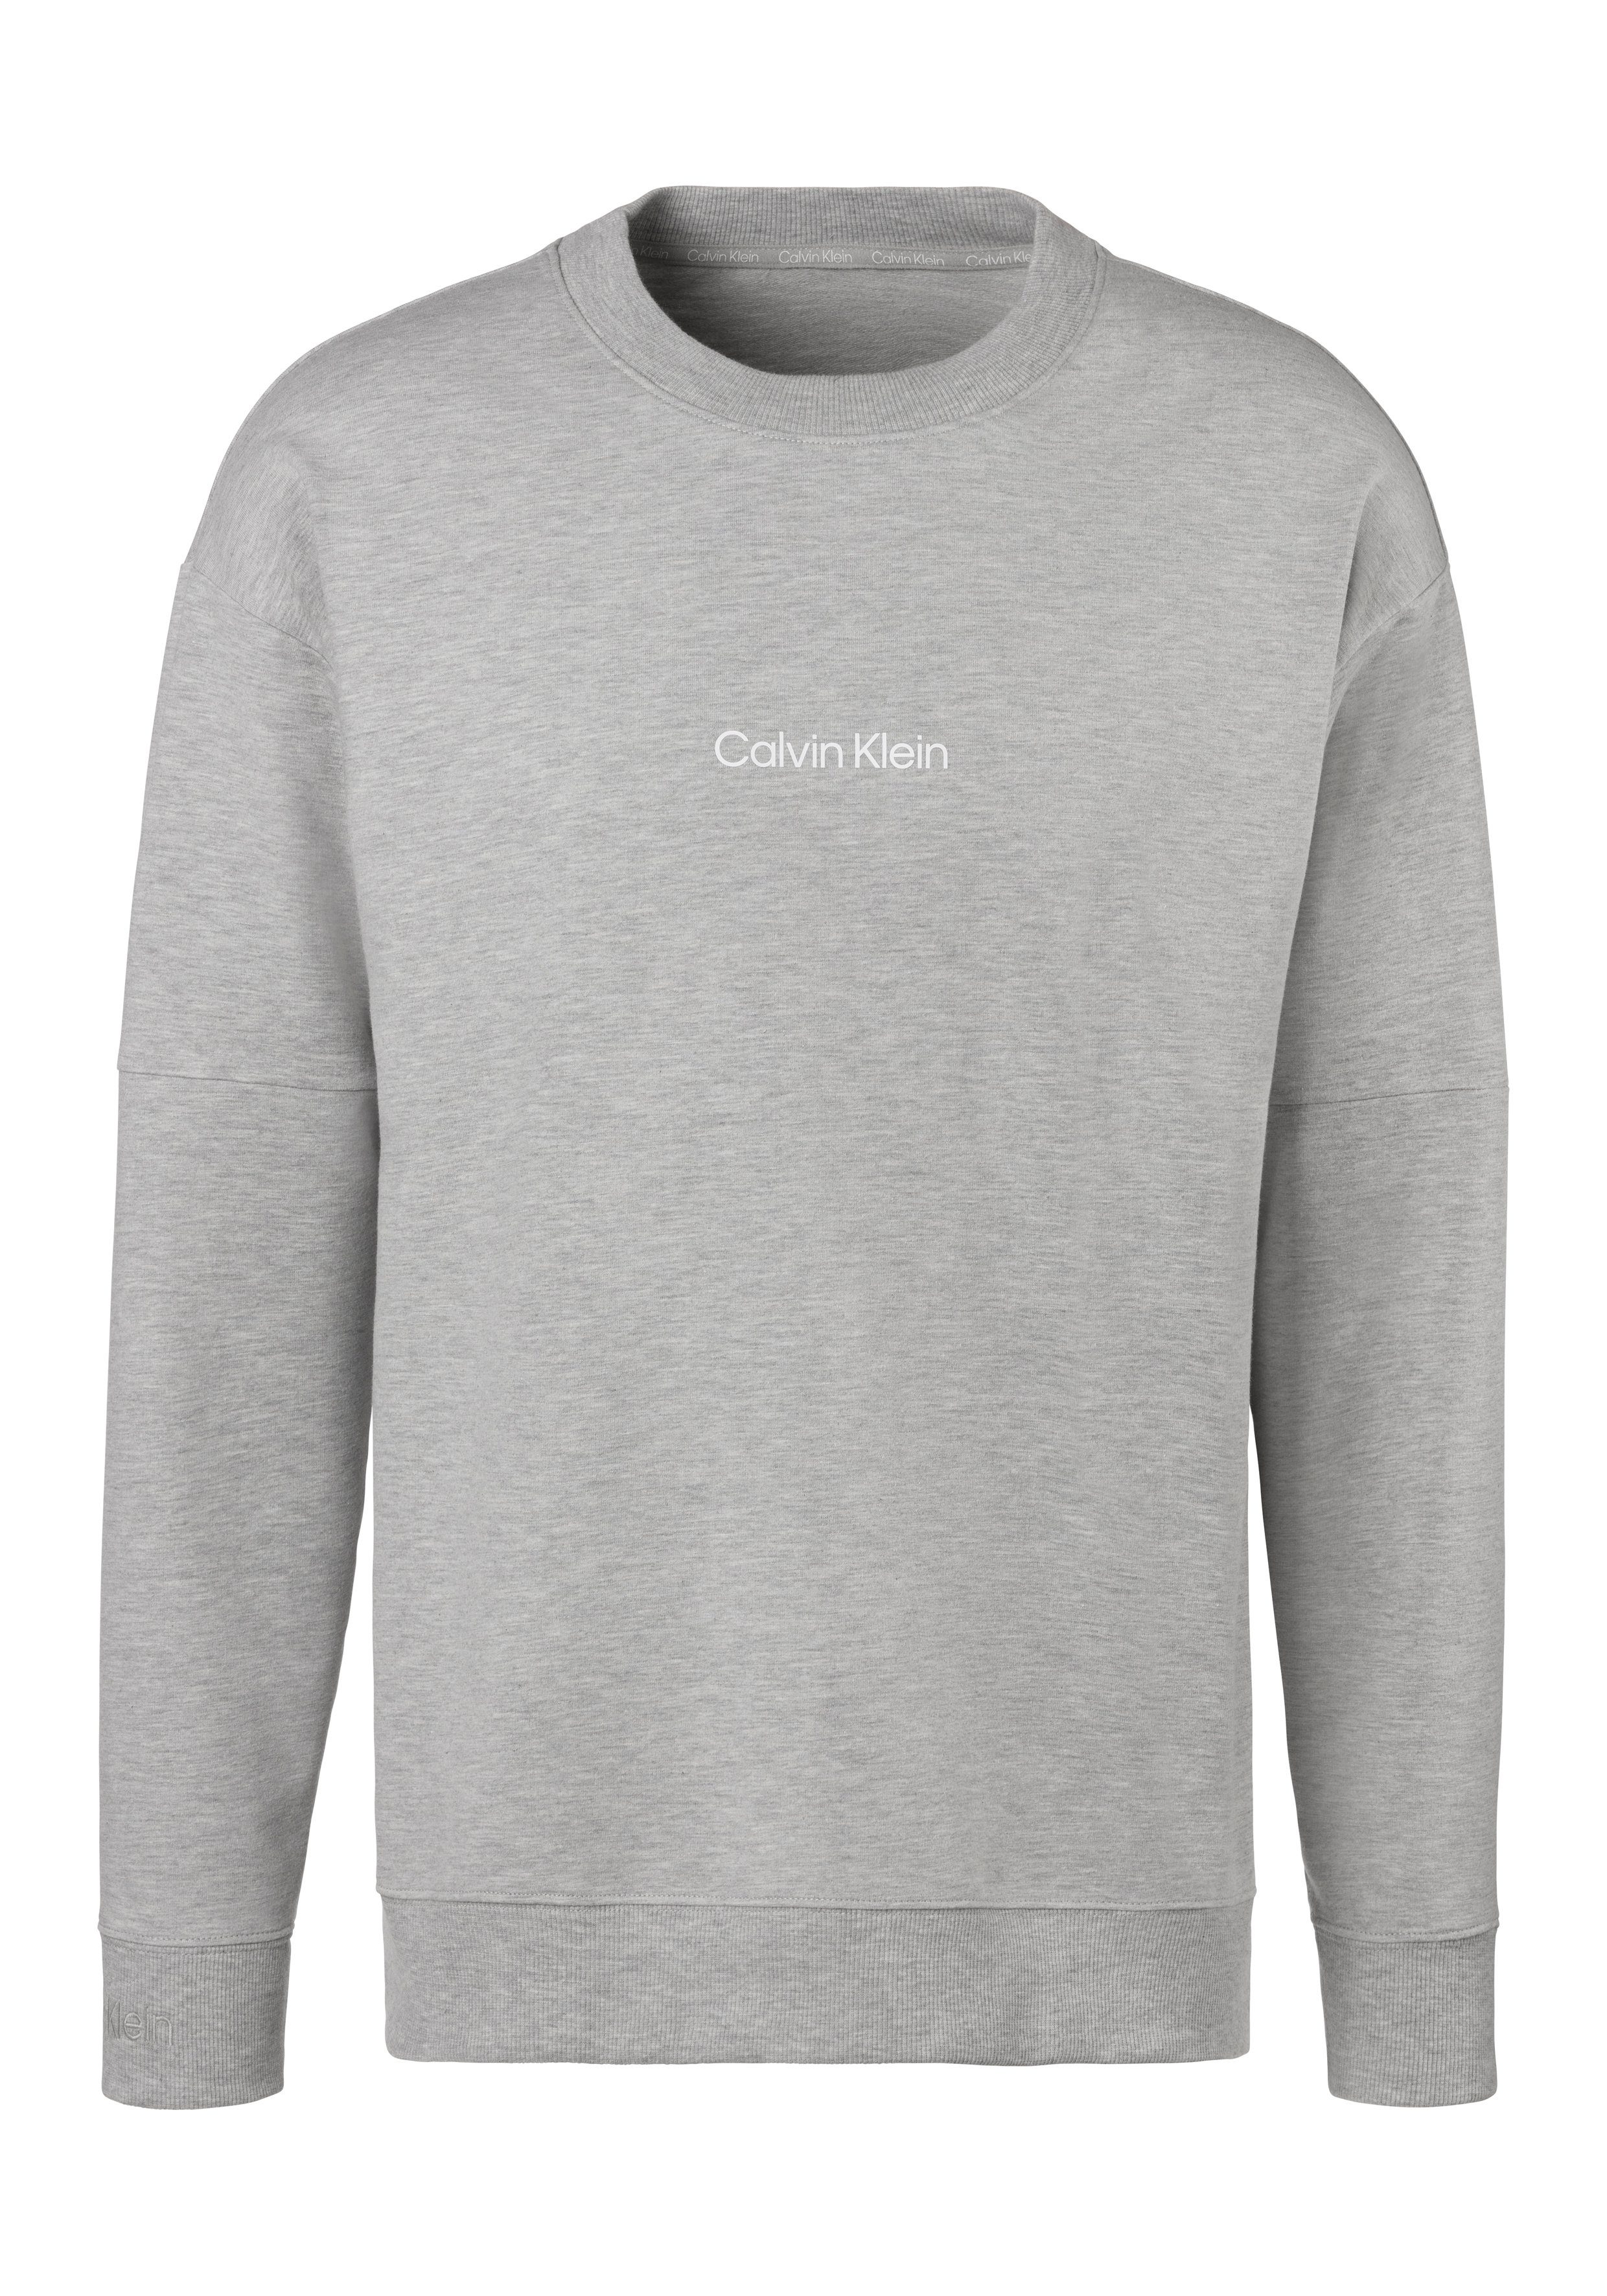 Klein vorn Sweatshirt mit grau-meliert Underwear Logodruck Calvin